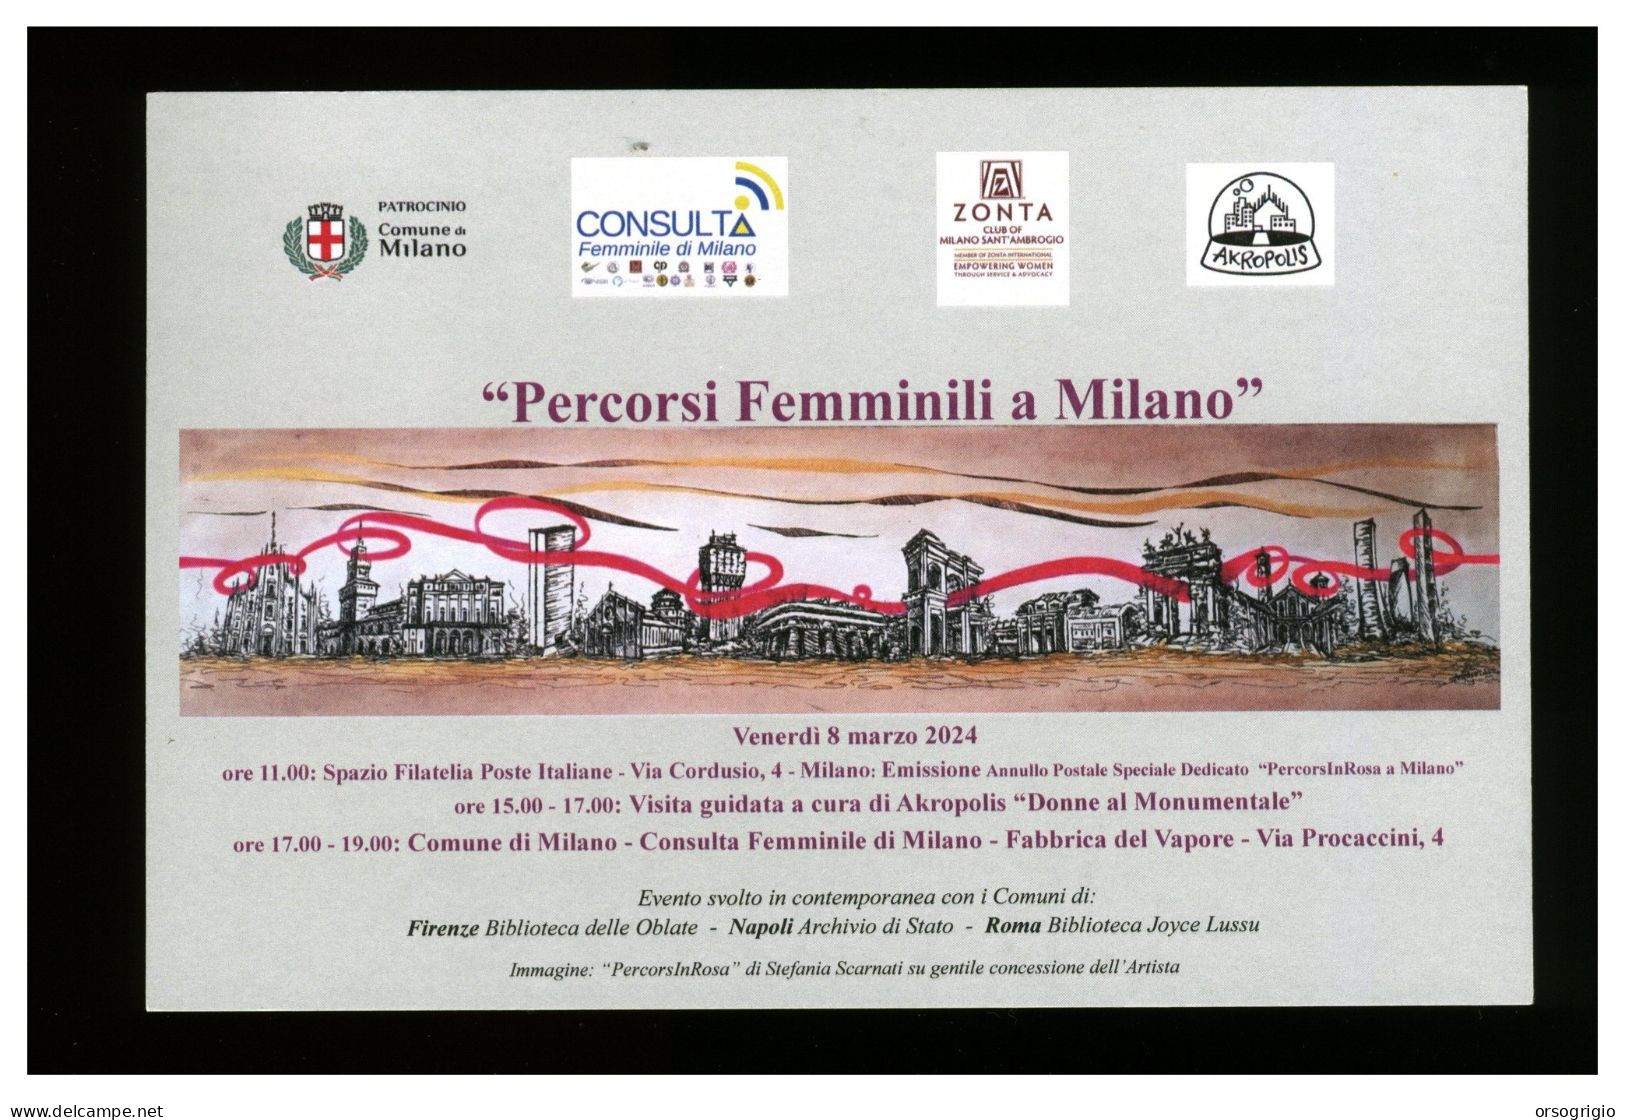 ITALIA - MILANO - 2024 - Percorsi Femminili A Milano - Artista Stefania Scarnati - Zonta Club - Consulta Di Milano - Famous Ladies